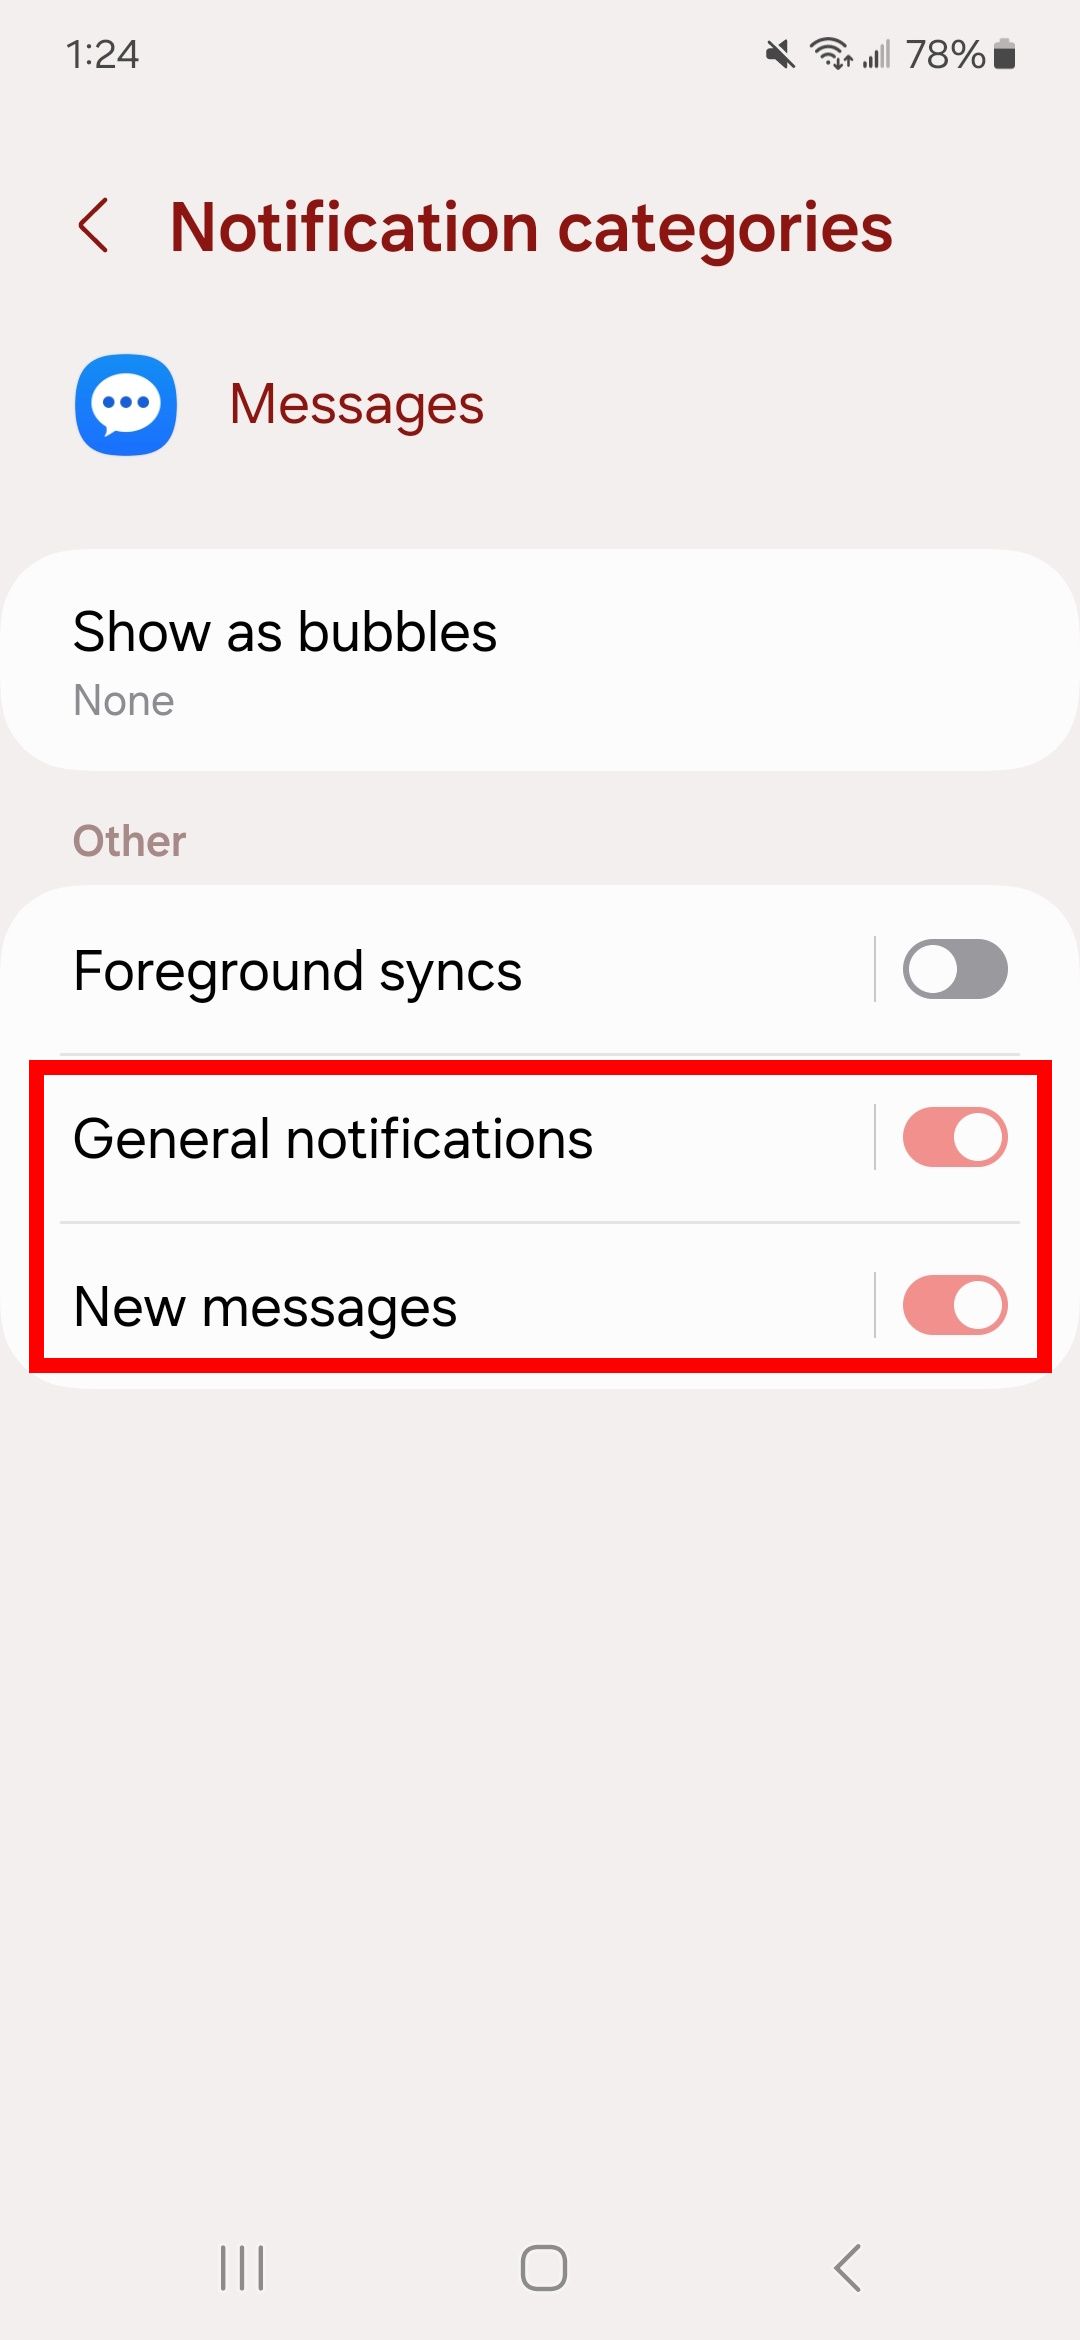 Garis persegi panjang merah pada notifikasi umum dan pesan baru pada kategori notifikasi di Samsung Messages di ponsel Samsung